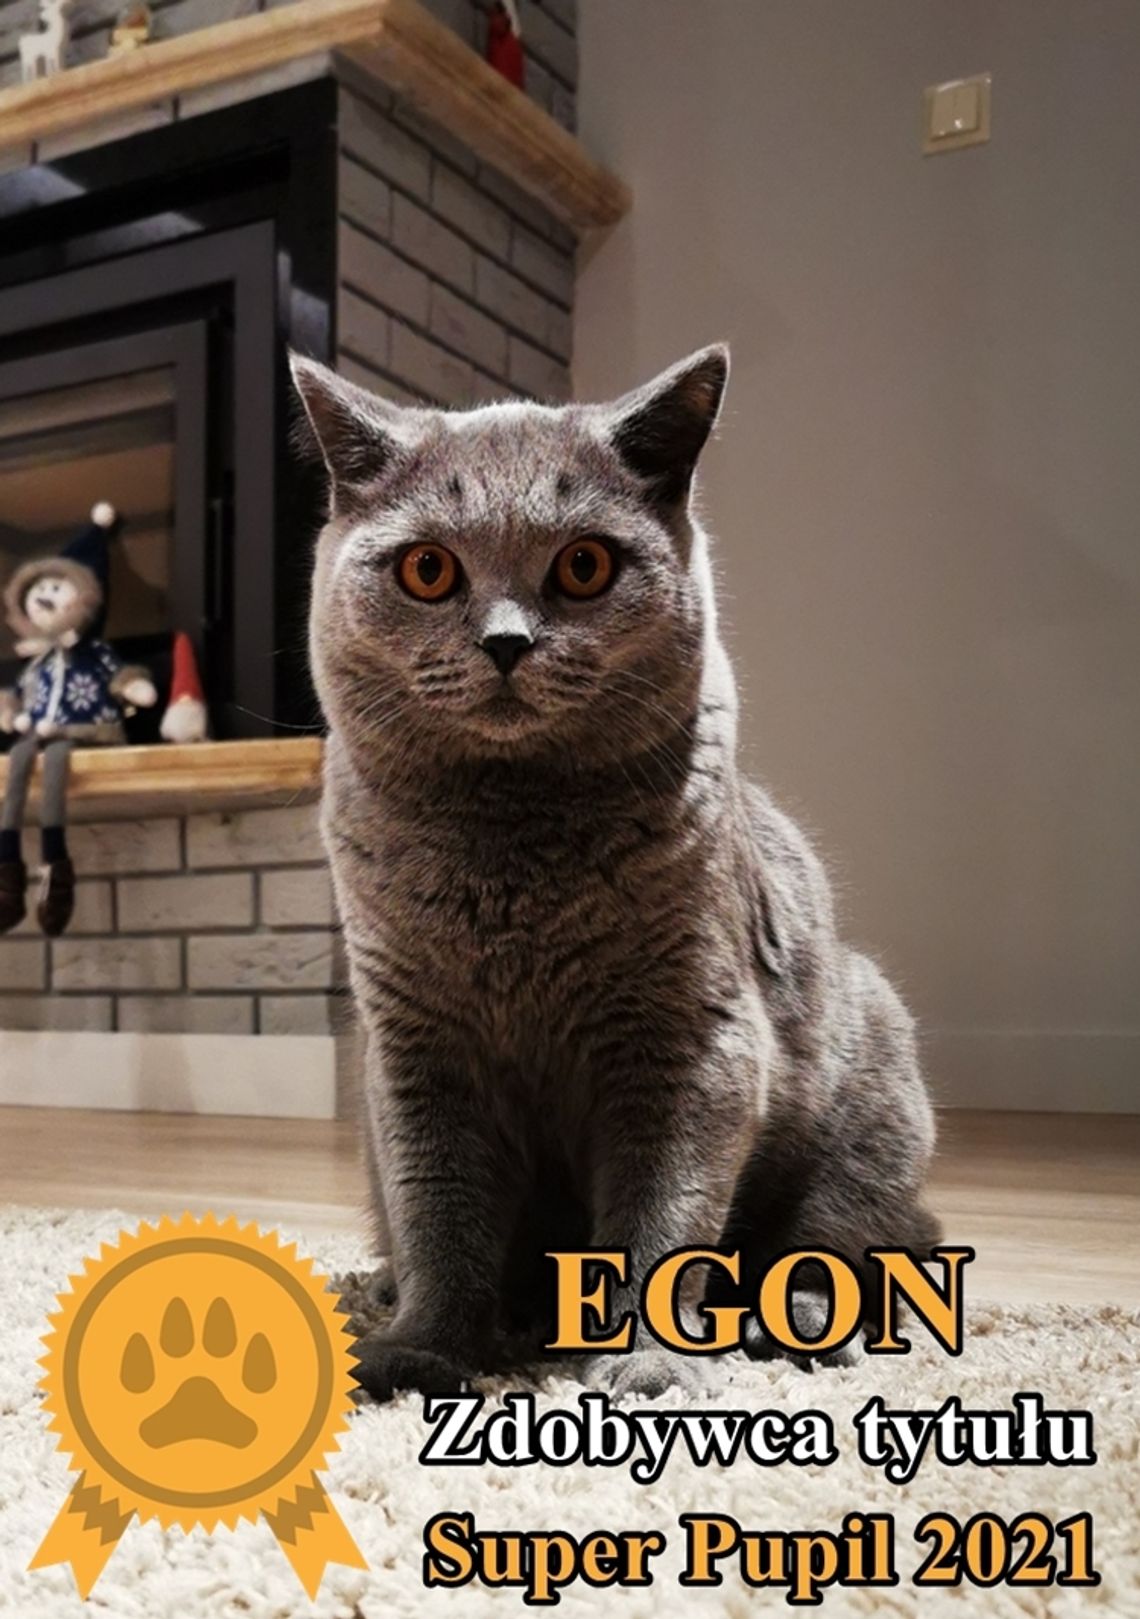 Zwycięzcą tytułu Super Pupil 2021 został kot EGON! Gratulujemy!